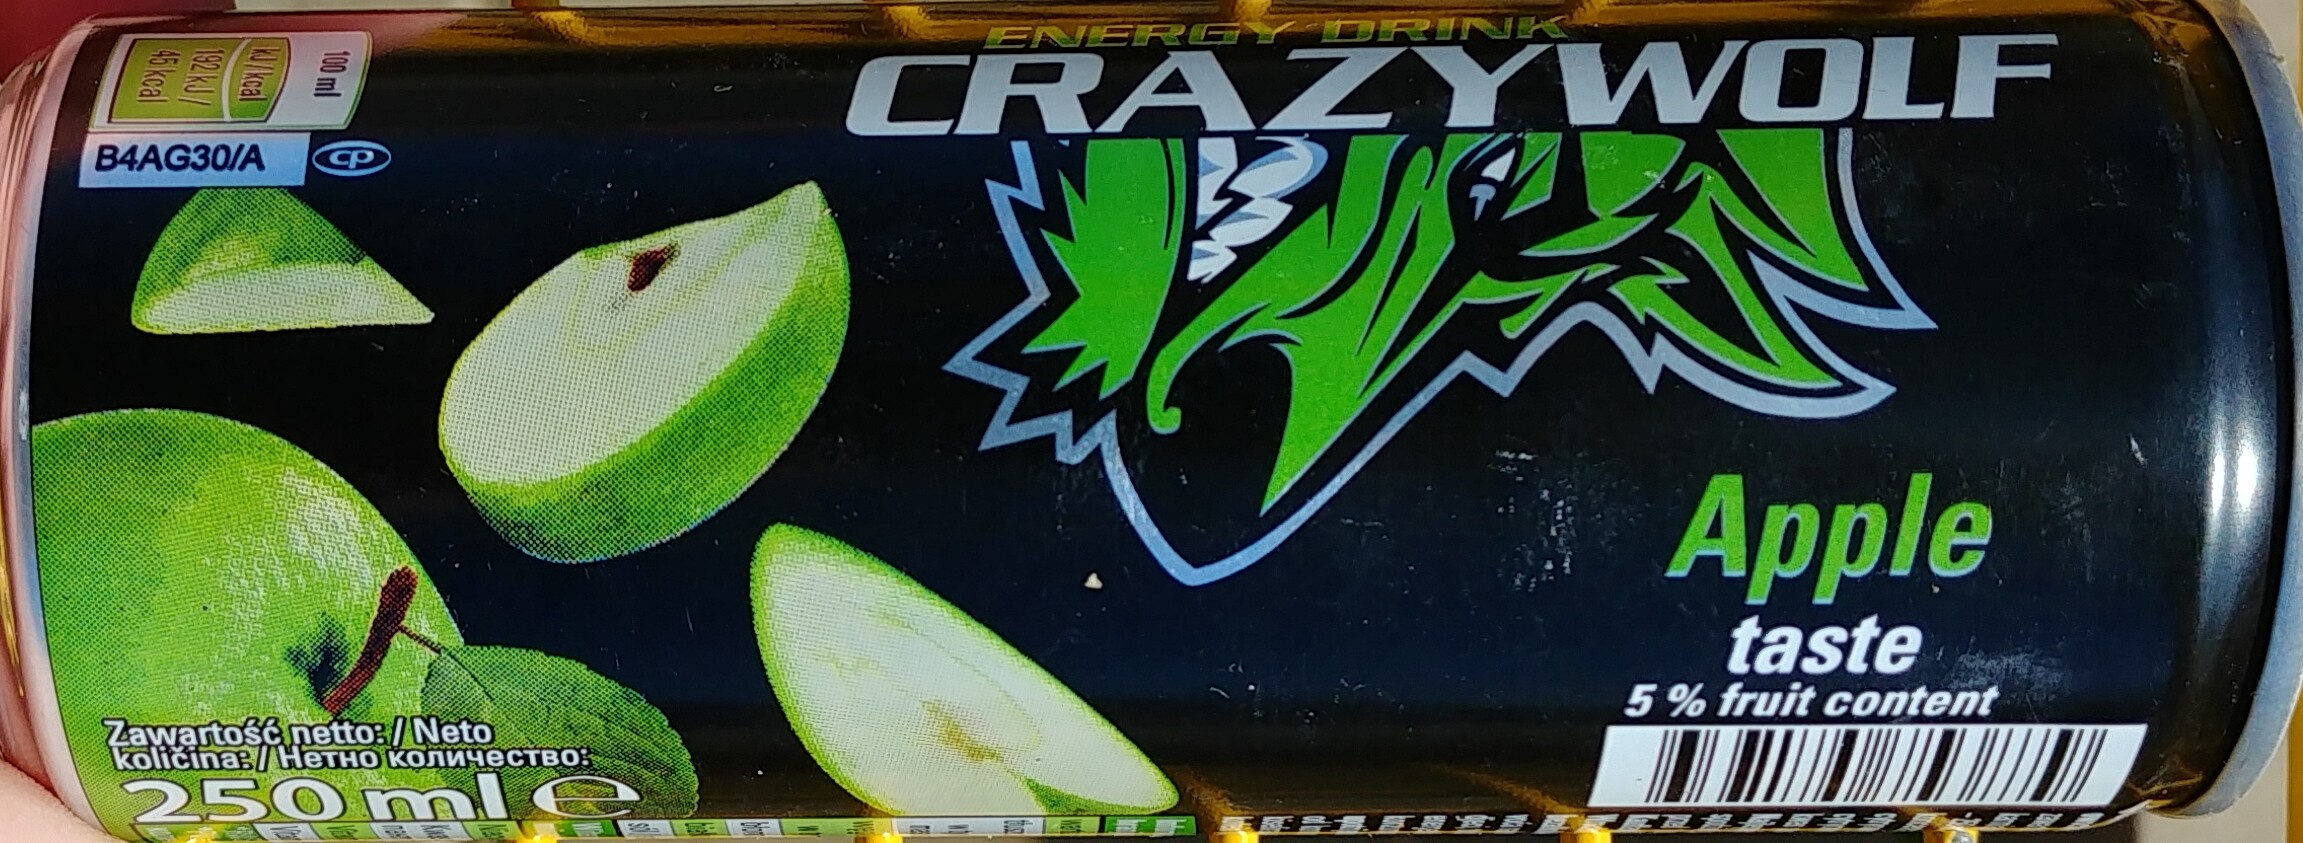 Crazy wolf energy drink jabłkowy - Produkt